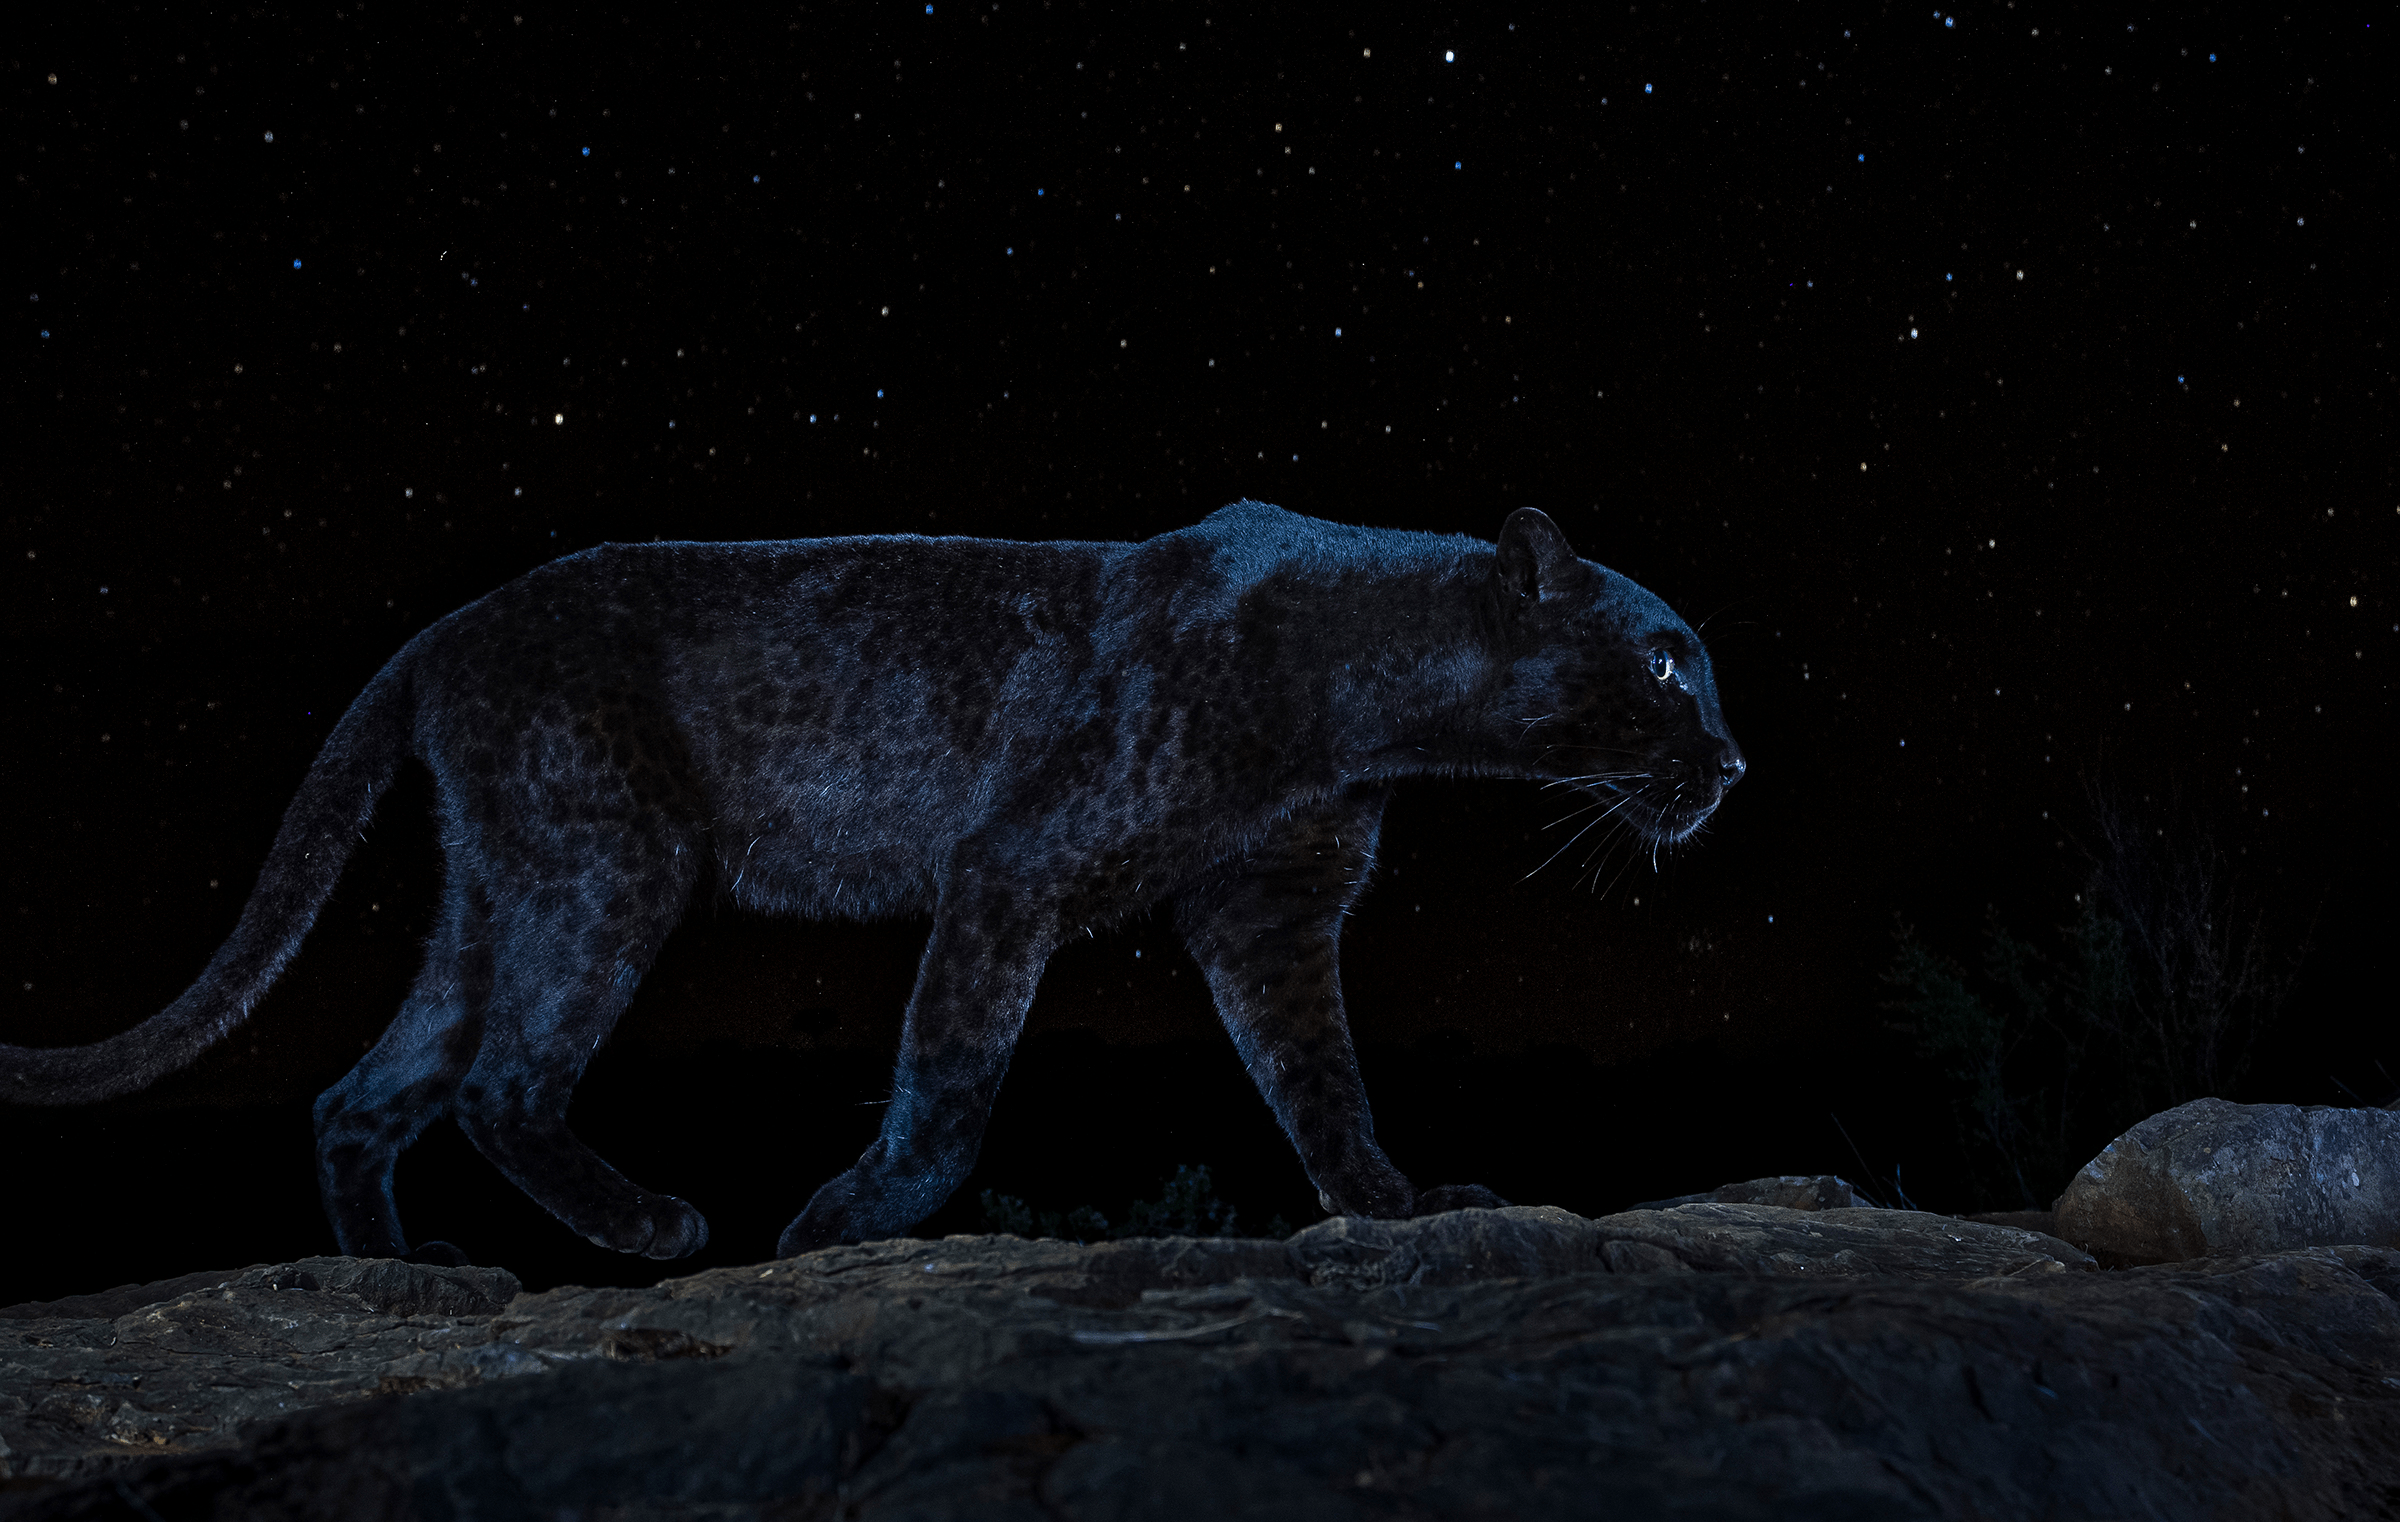 病变的夜精灵,黑豹:告诉你,为什么同在非洲,黑狮却从未存在过